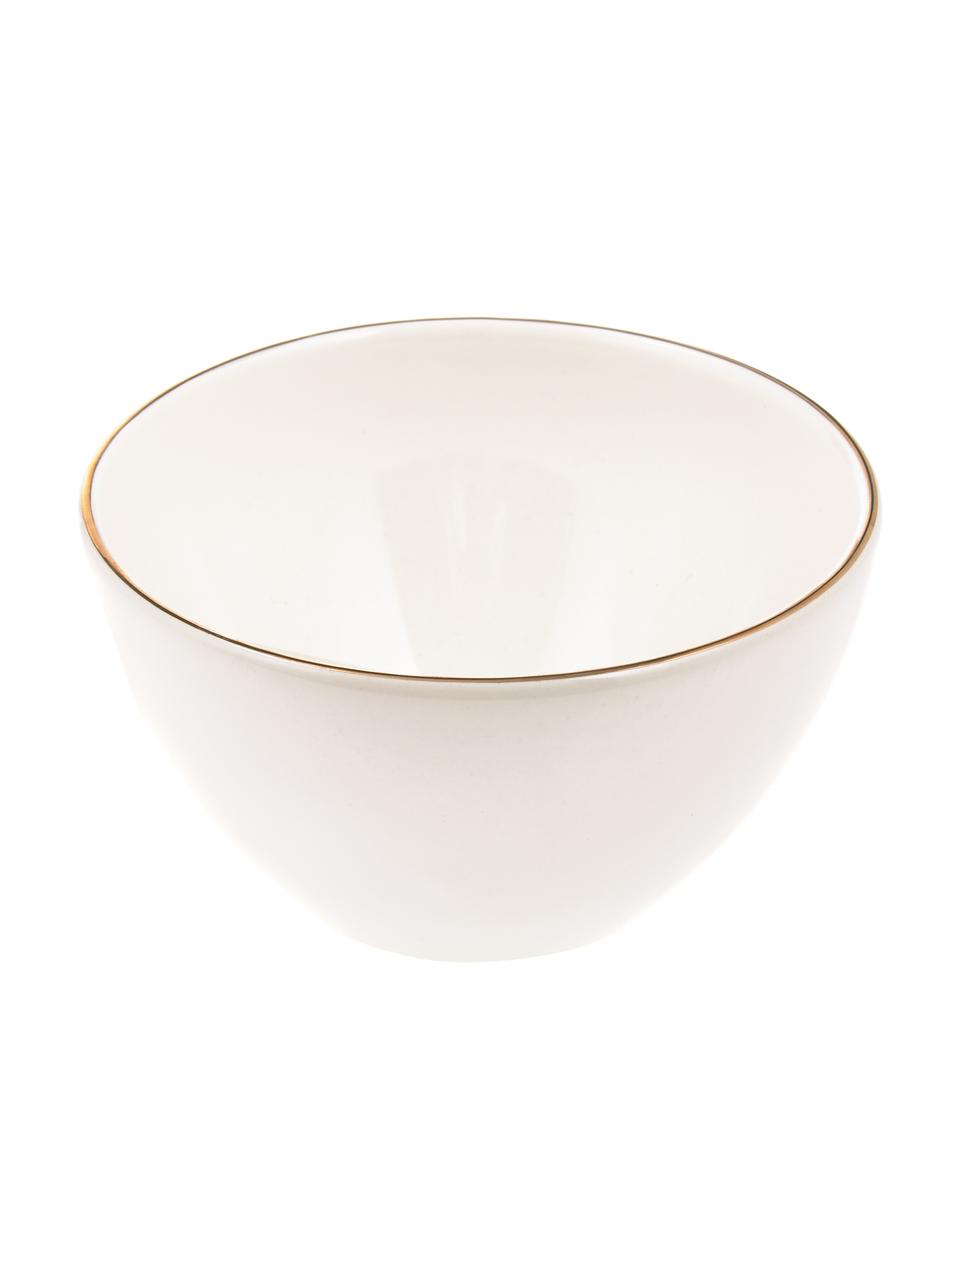 Ručně vyrobená miska se zlatým okrajem Allure, 6 ks, Keramika, Bílá, zlatá, Ø 15 cm